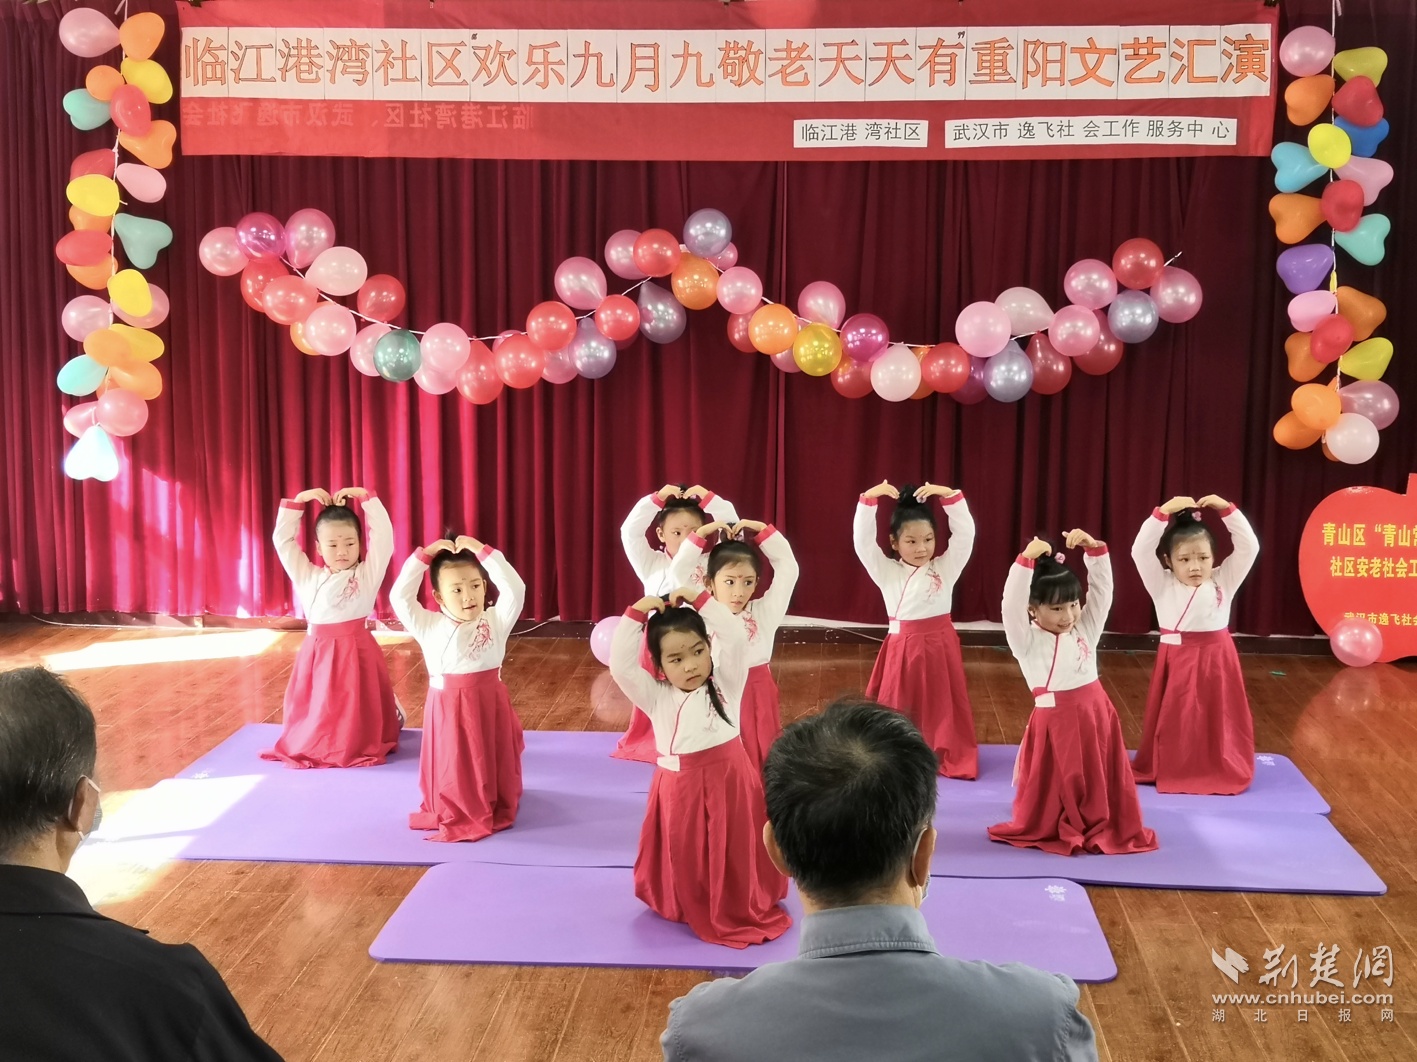 青山区红钢城街举办“花式”活动迎重阳佳节